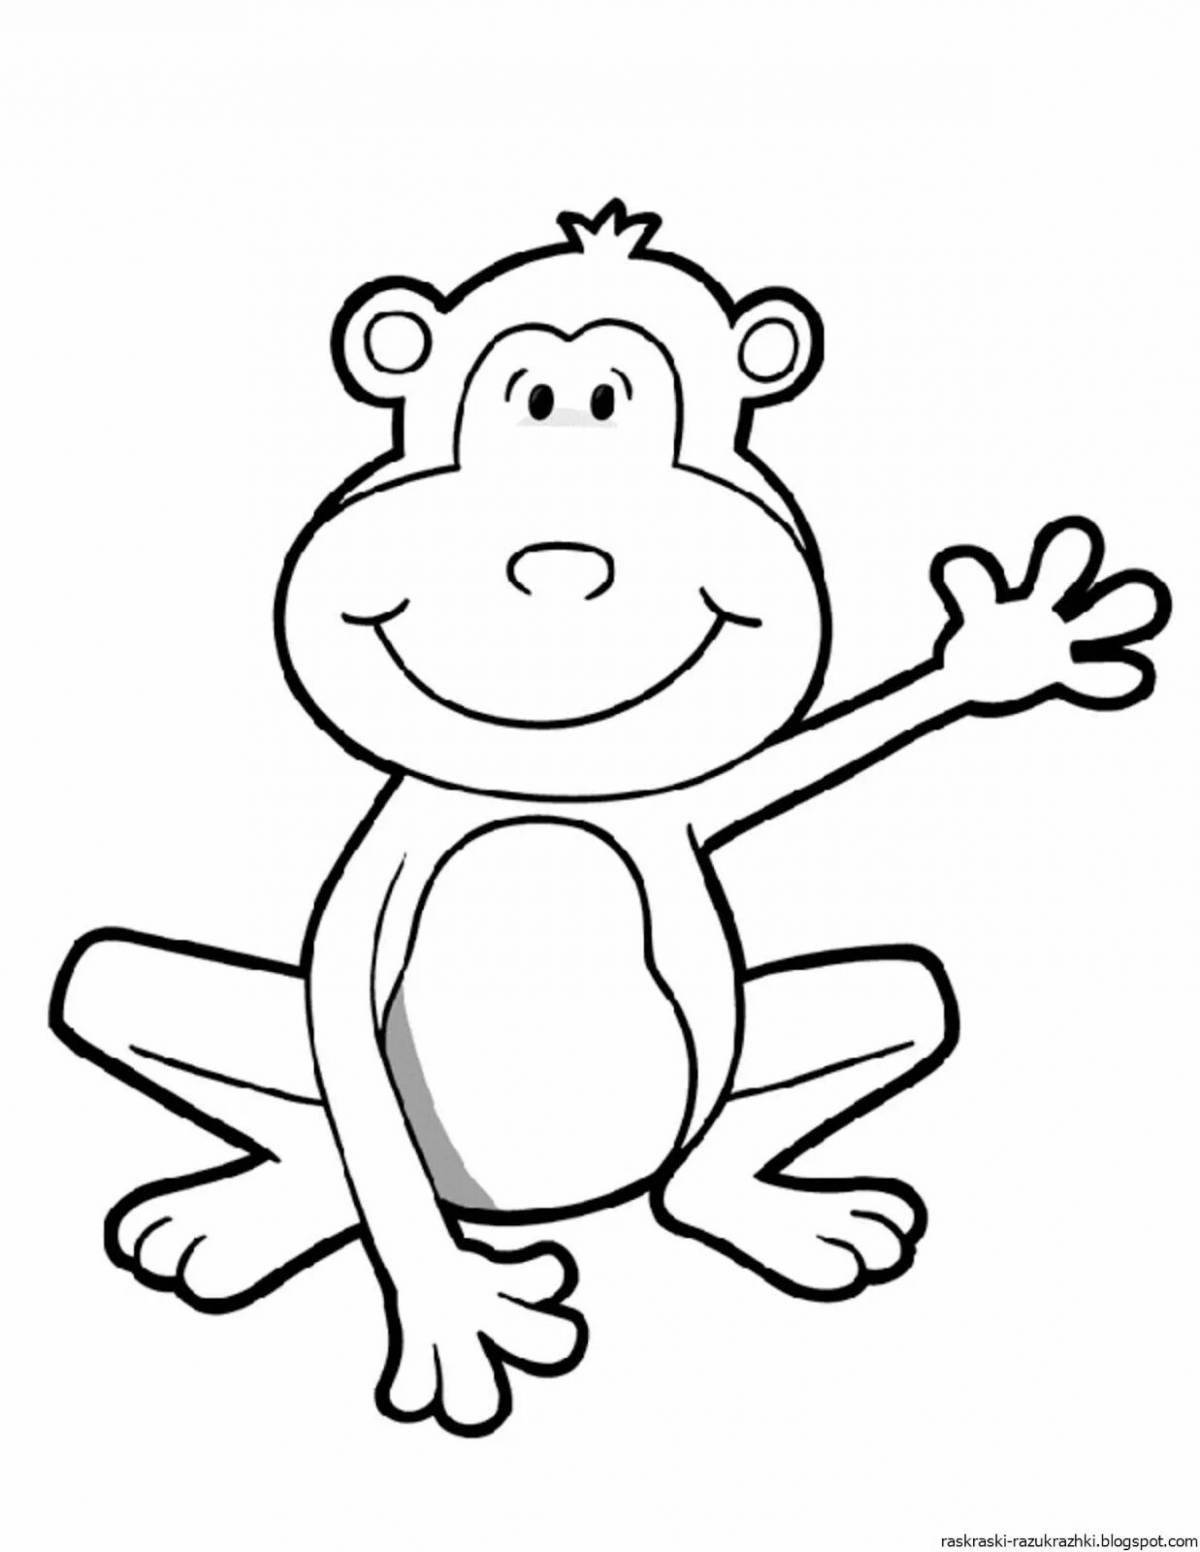 Озорной рисунок обезьяны для детей